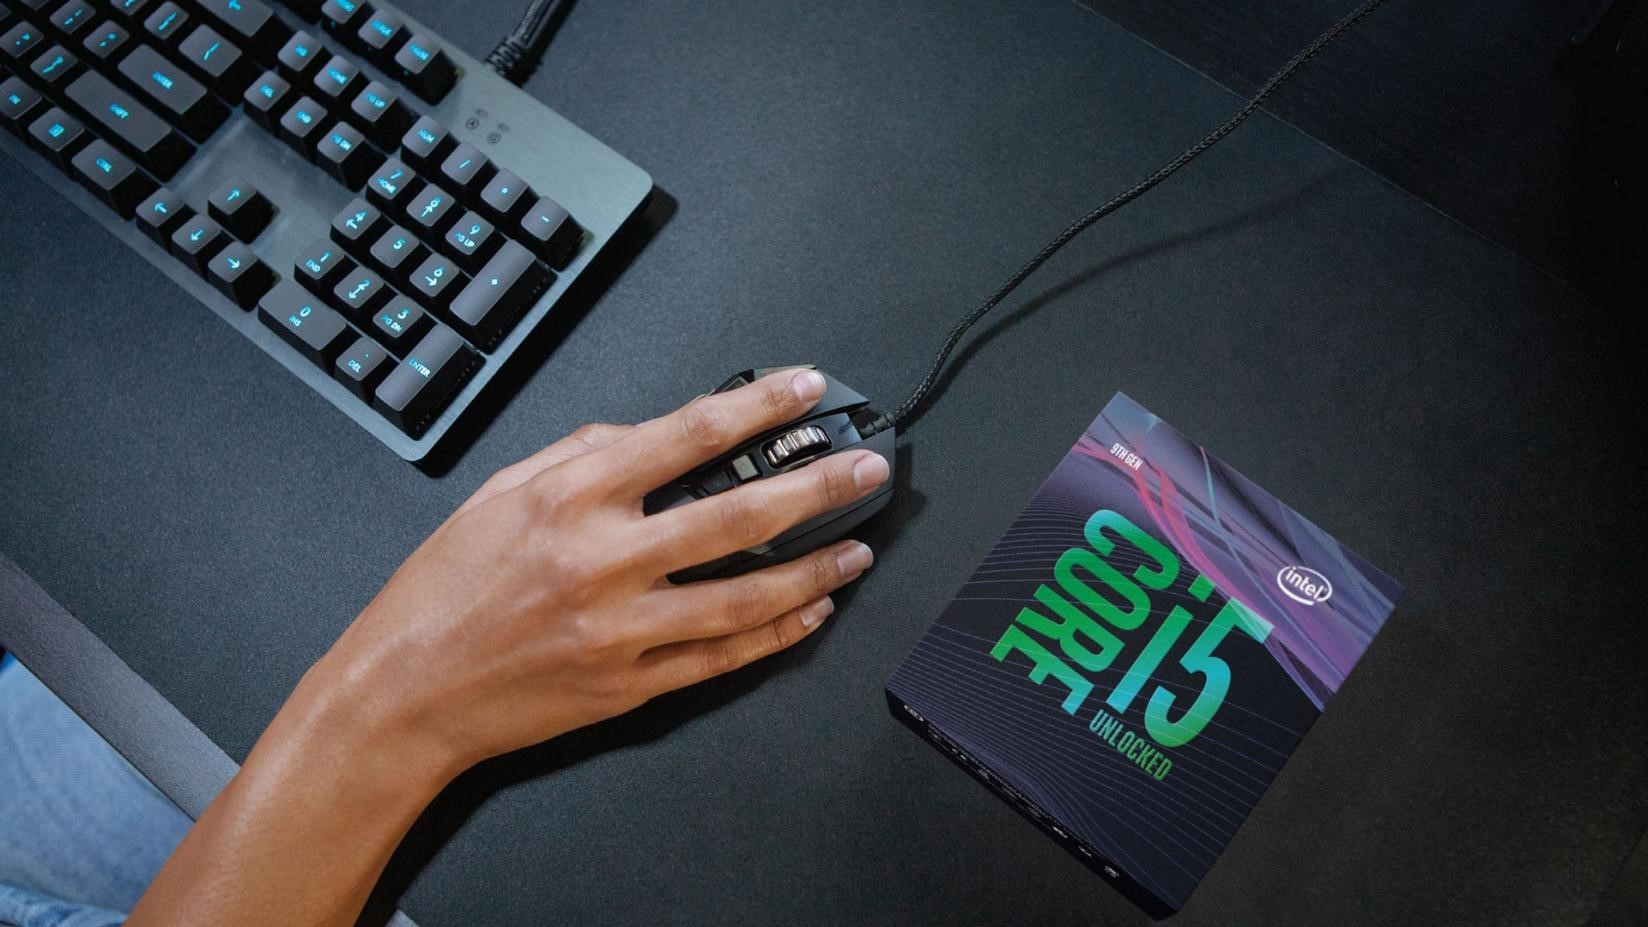 упаковка процессора core i5 9-го поколения и мужчина, работающий с мышью и клавиатурой